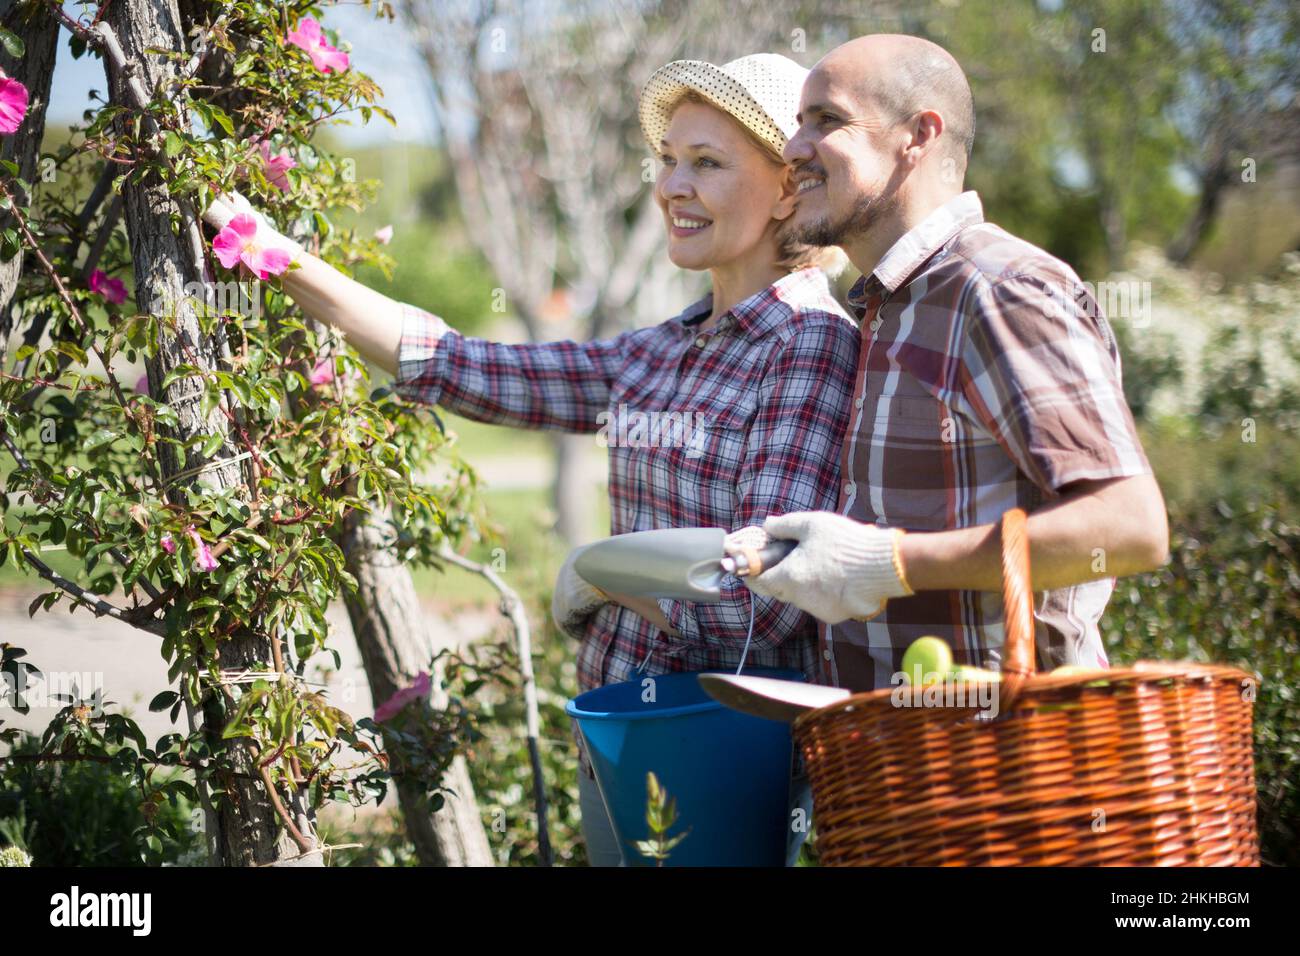 Familienarbeit im Garten. Frau und Mann wachsen Rosen Stockfoto